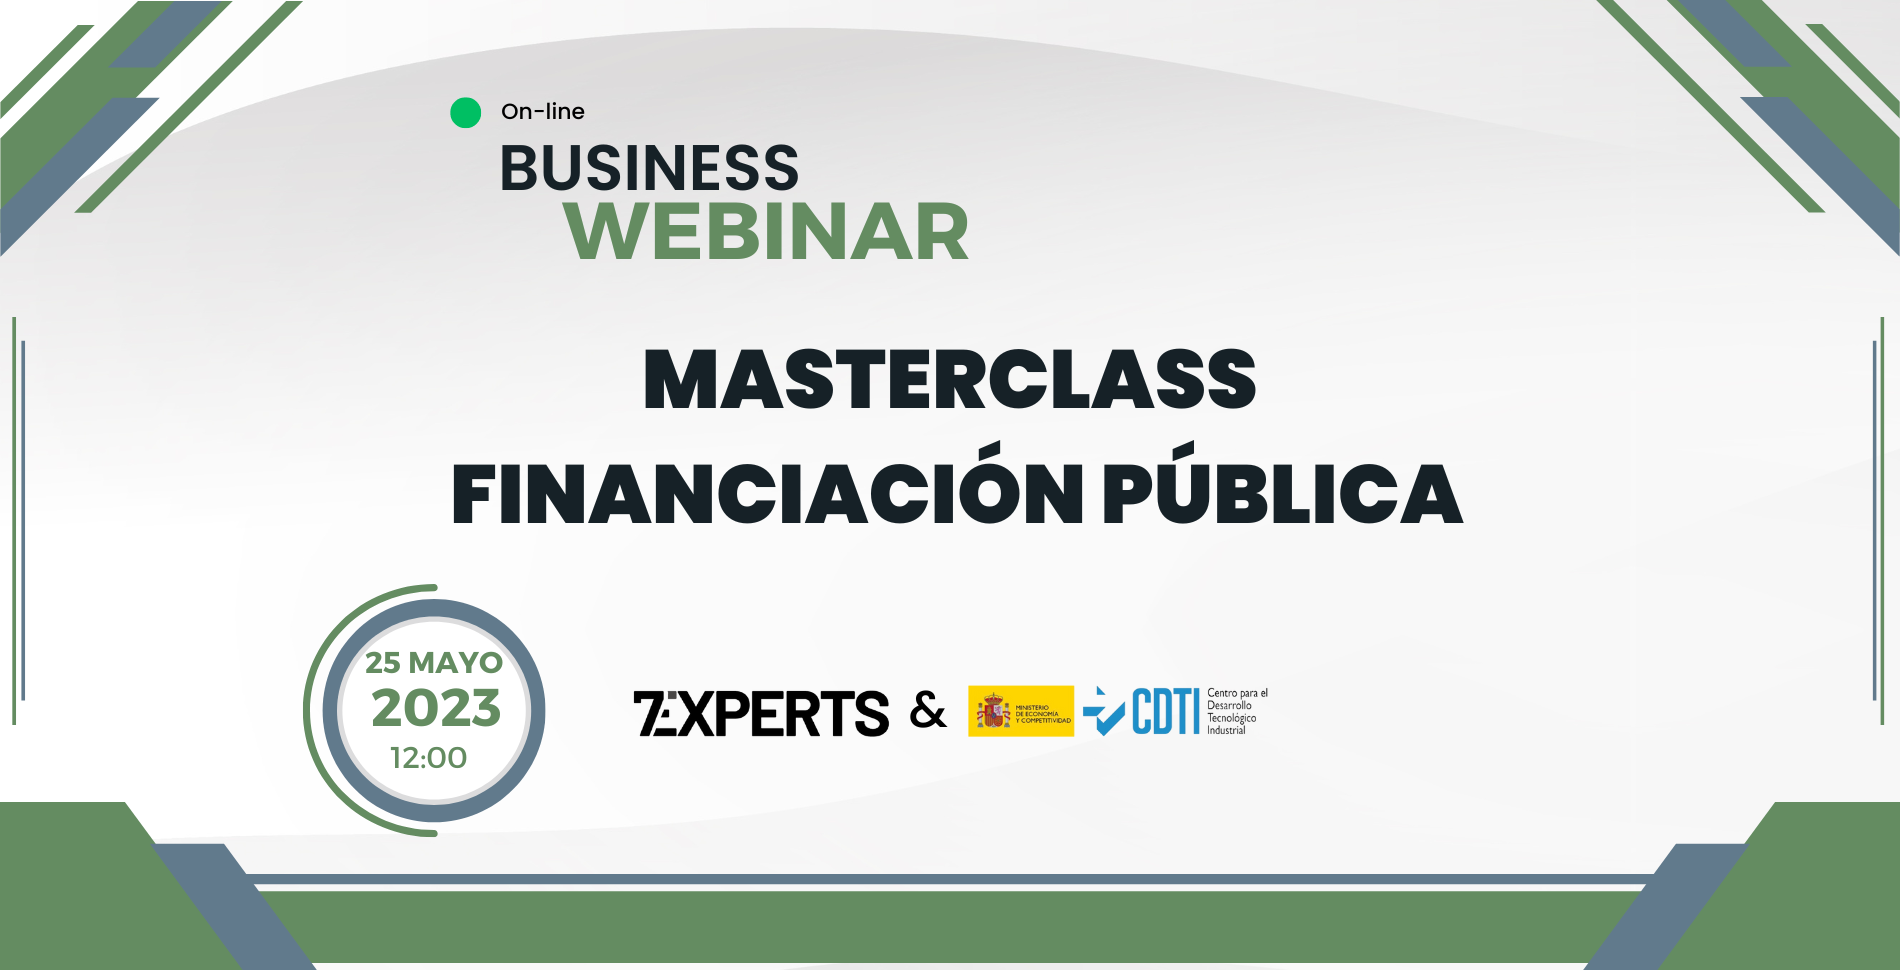 Webinar - Masterclass Financiación Publica (7Experts & CDTI)